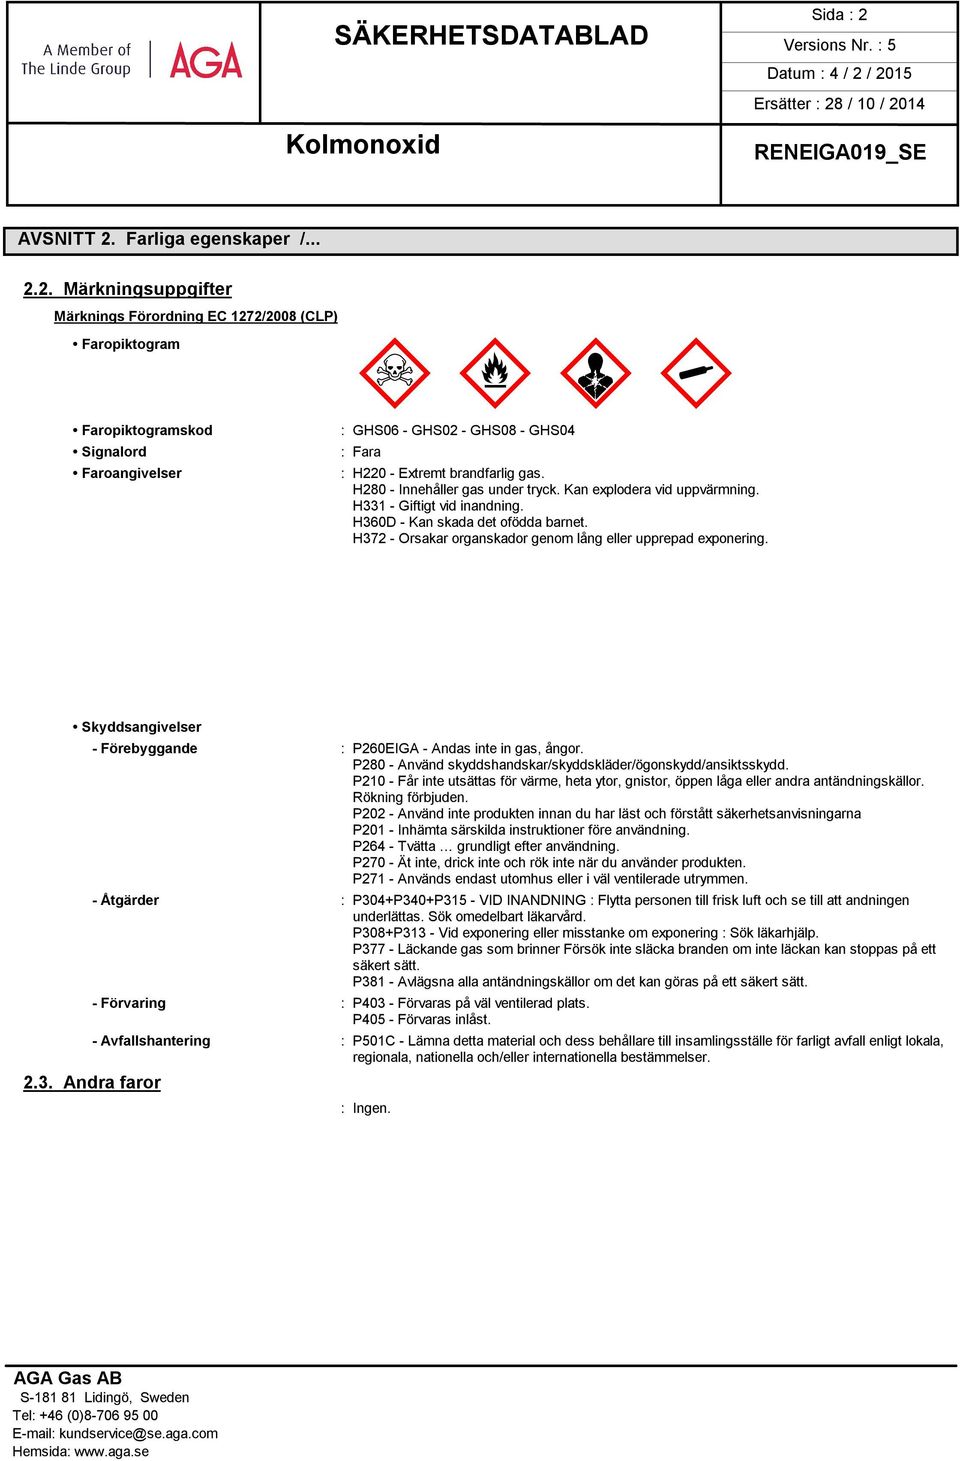 Skyddsangivelser 2.3. Andra faror - Förebyggande : P260EIGA - Andas inte in gas, ångor. P280 - Använd skyddshandskar/skyddskläder/ögonskydd/ansiktsskydd.